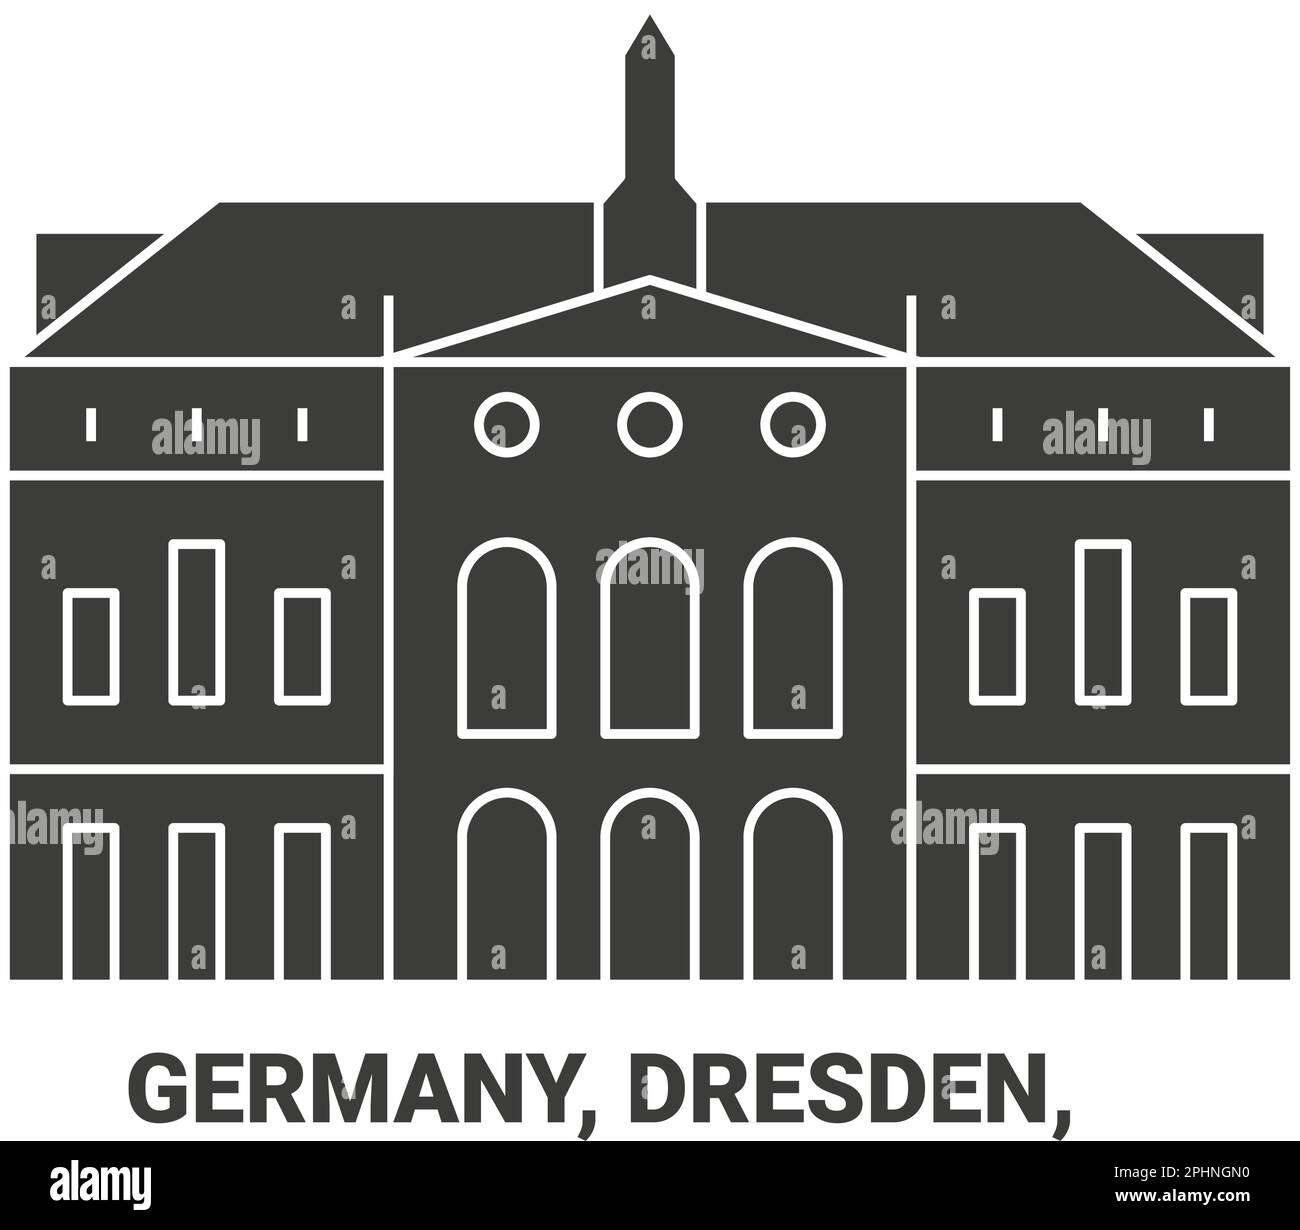 Alemania, Dresde, ilustración vectorial de referencia de viaje Ilustración del Vector